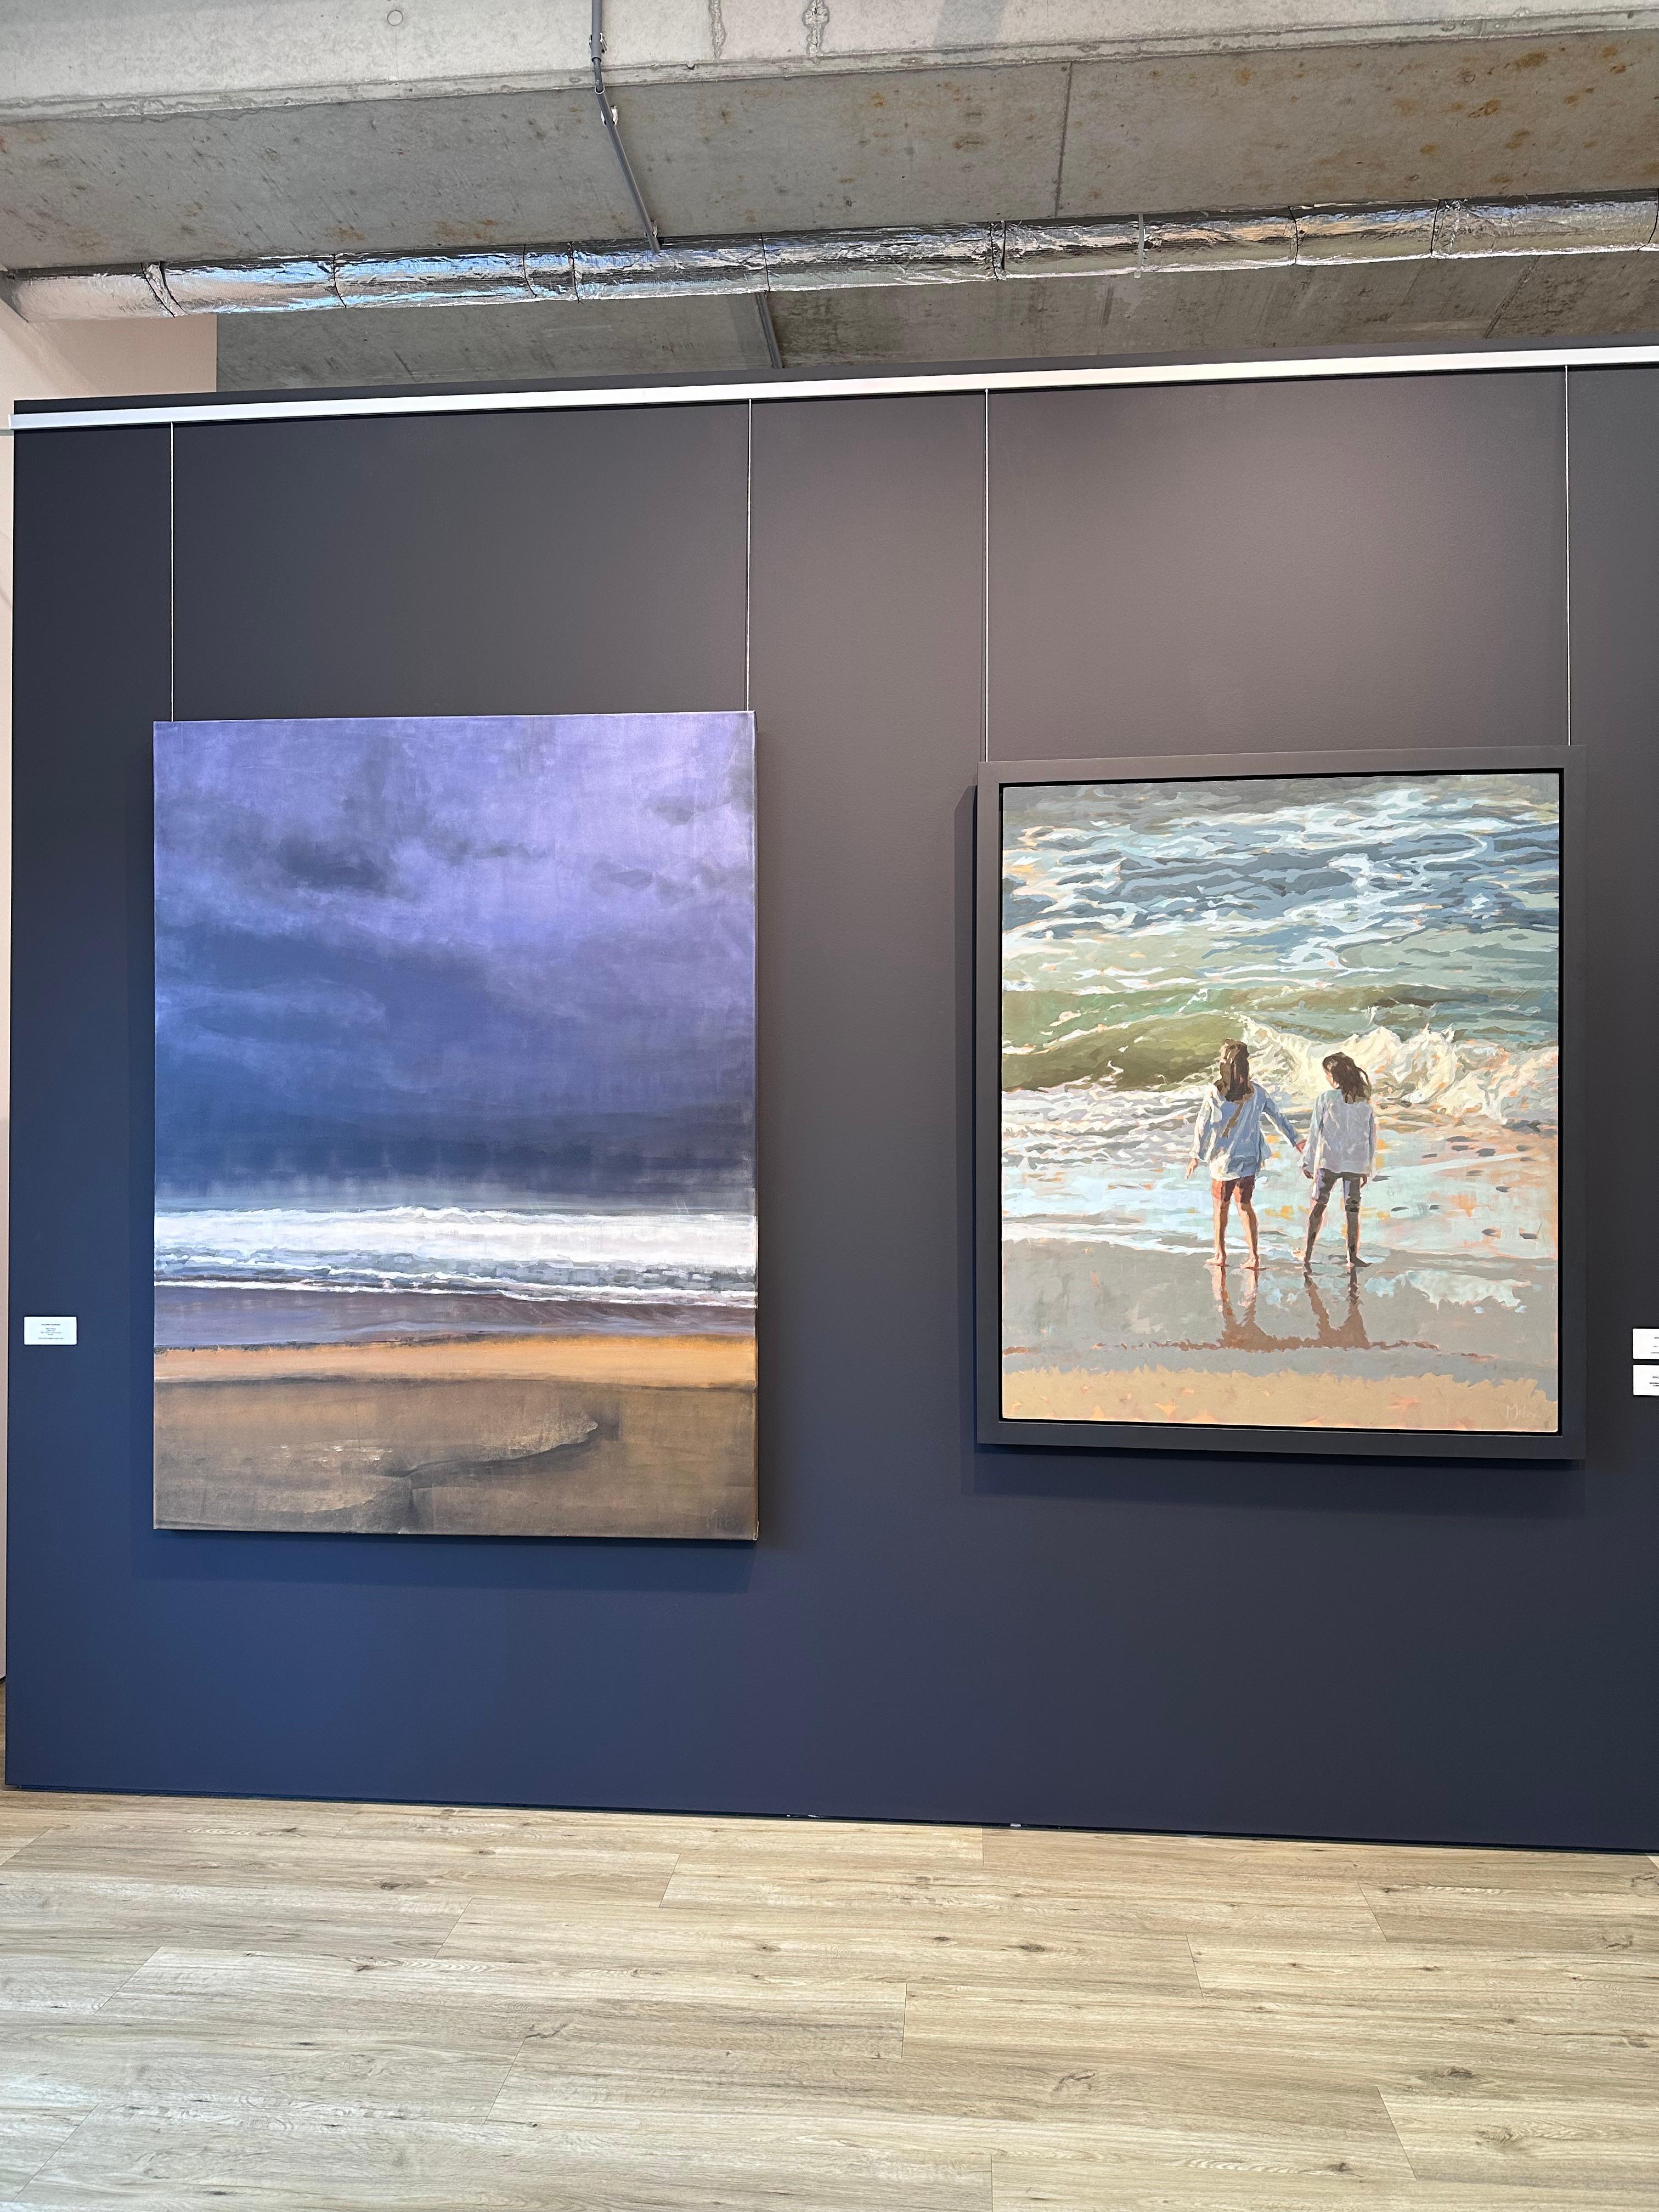 The Sea- 21ème siècle Peinture contemporaine de deux filles debout sur la plage - Contemporain Painting par Mitzy Renooy